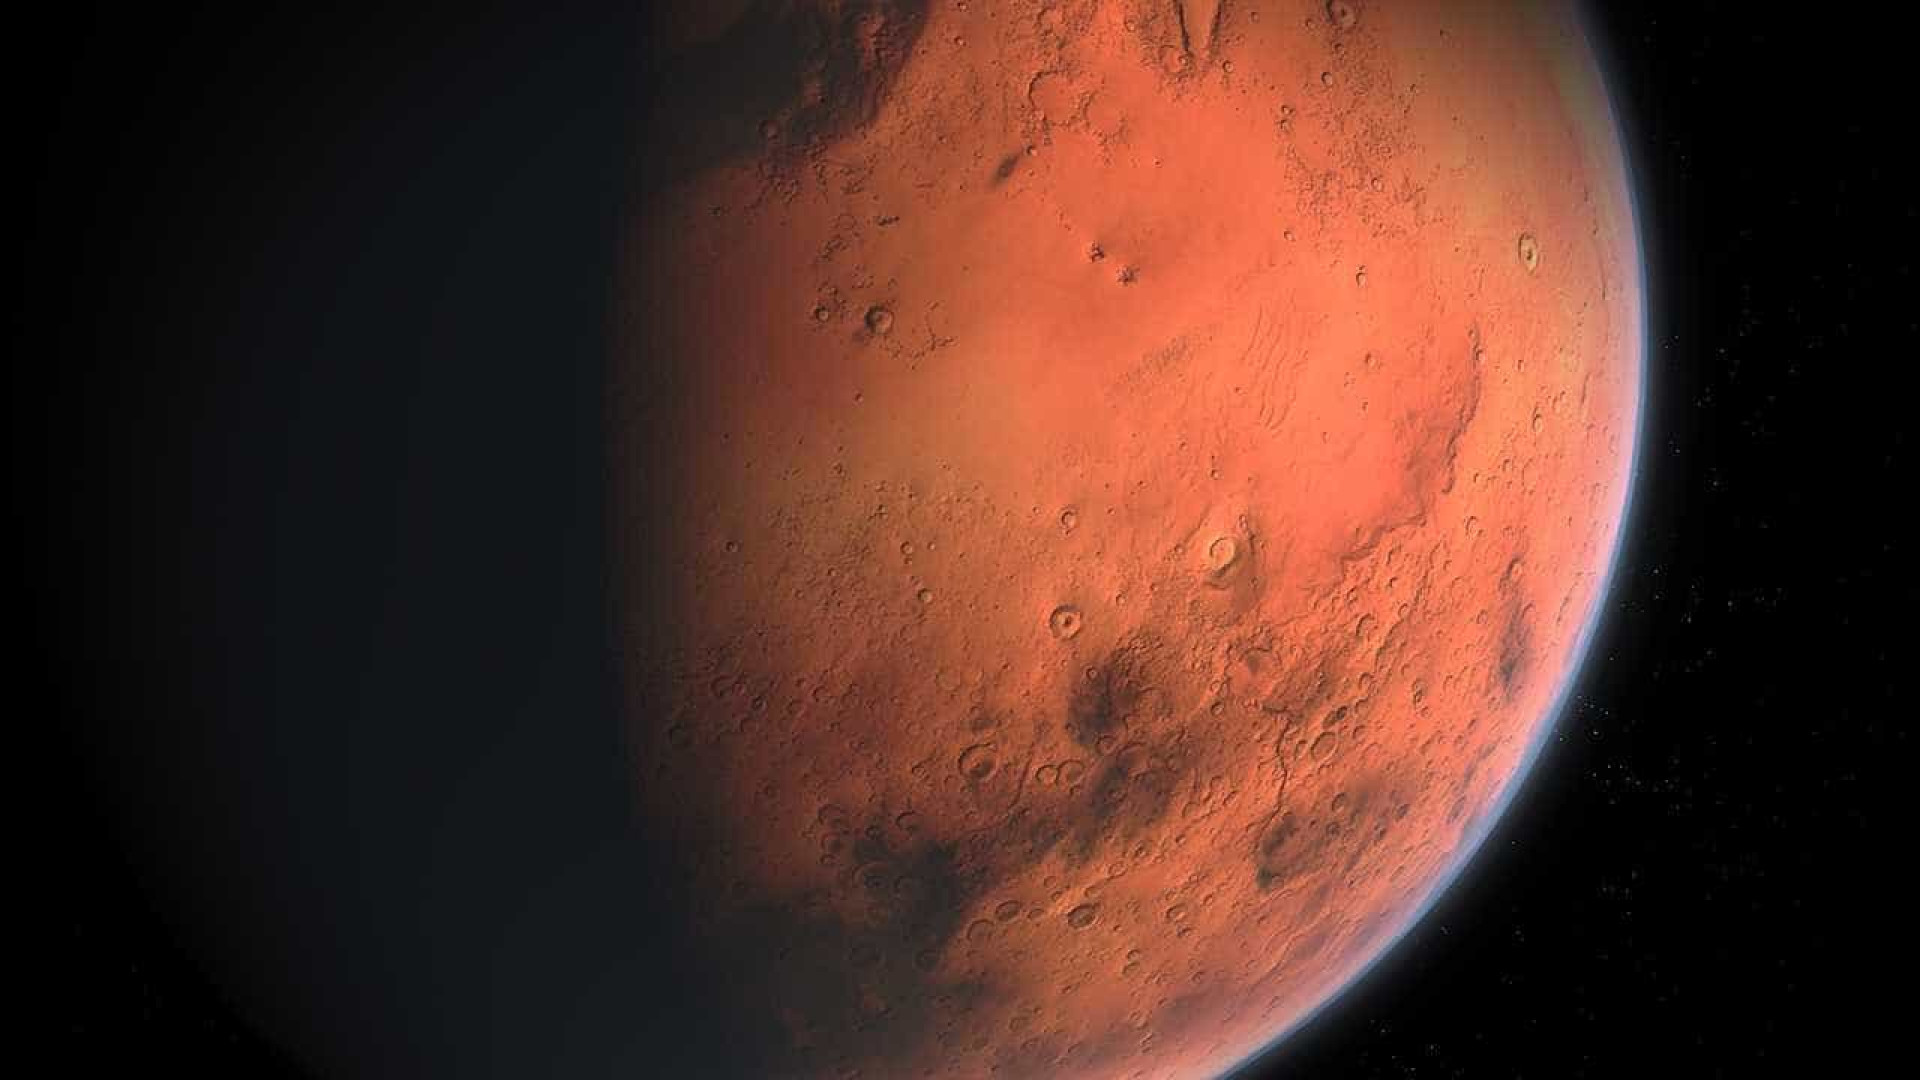 Imagens provam que já houve rios em Marte